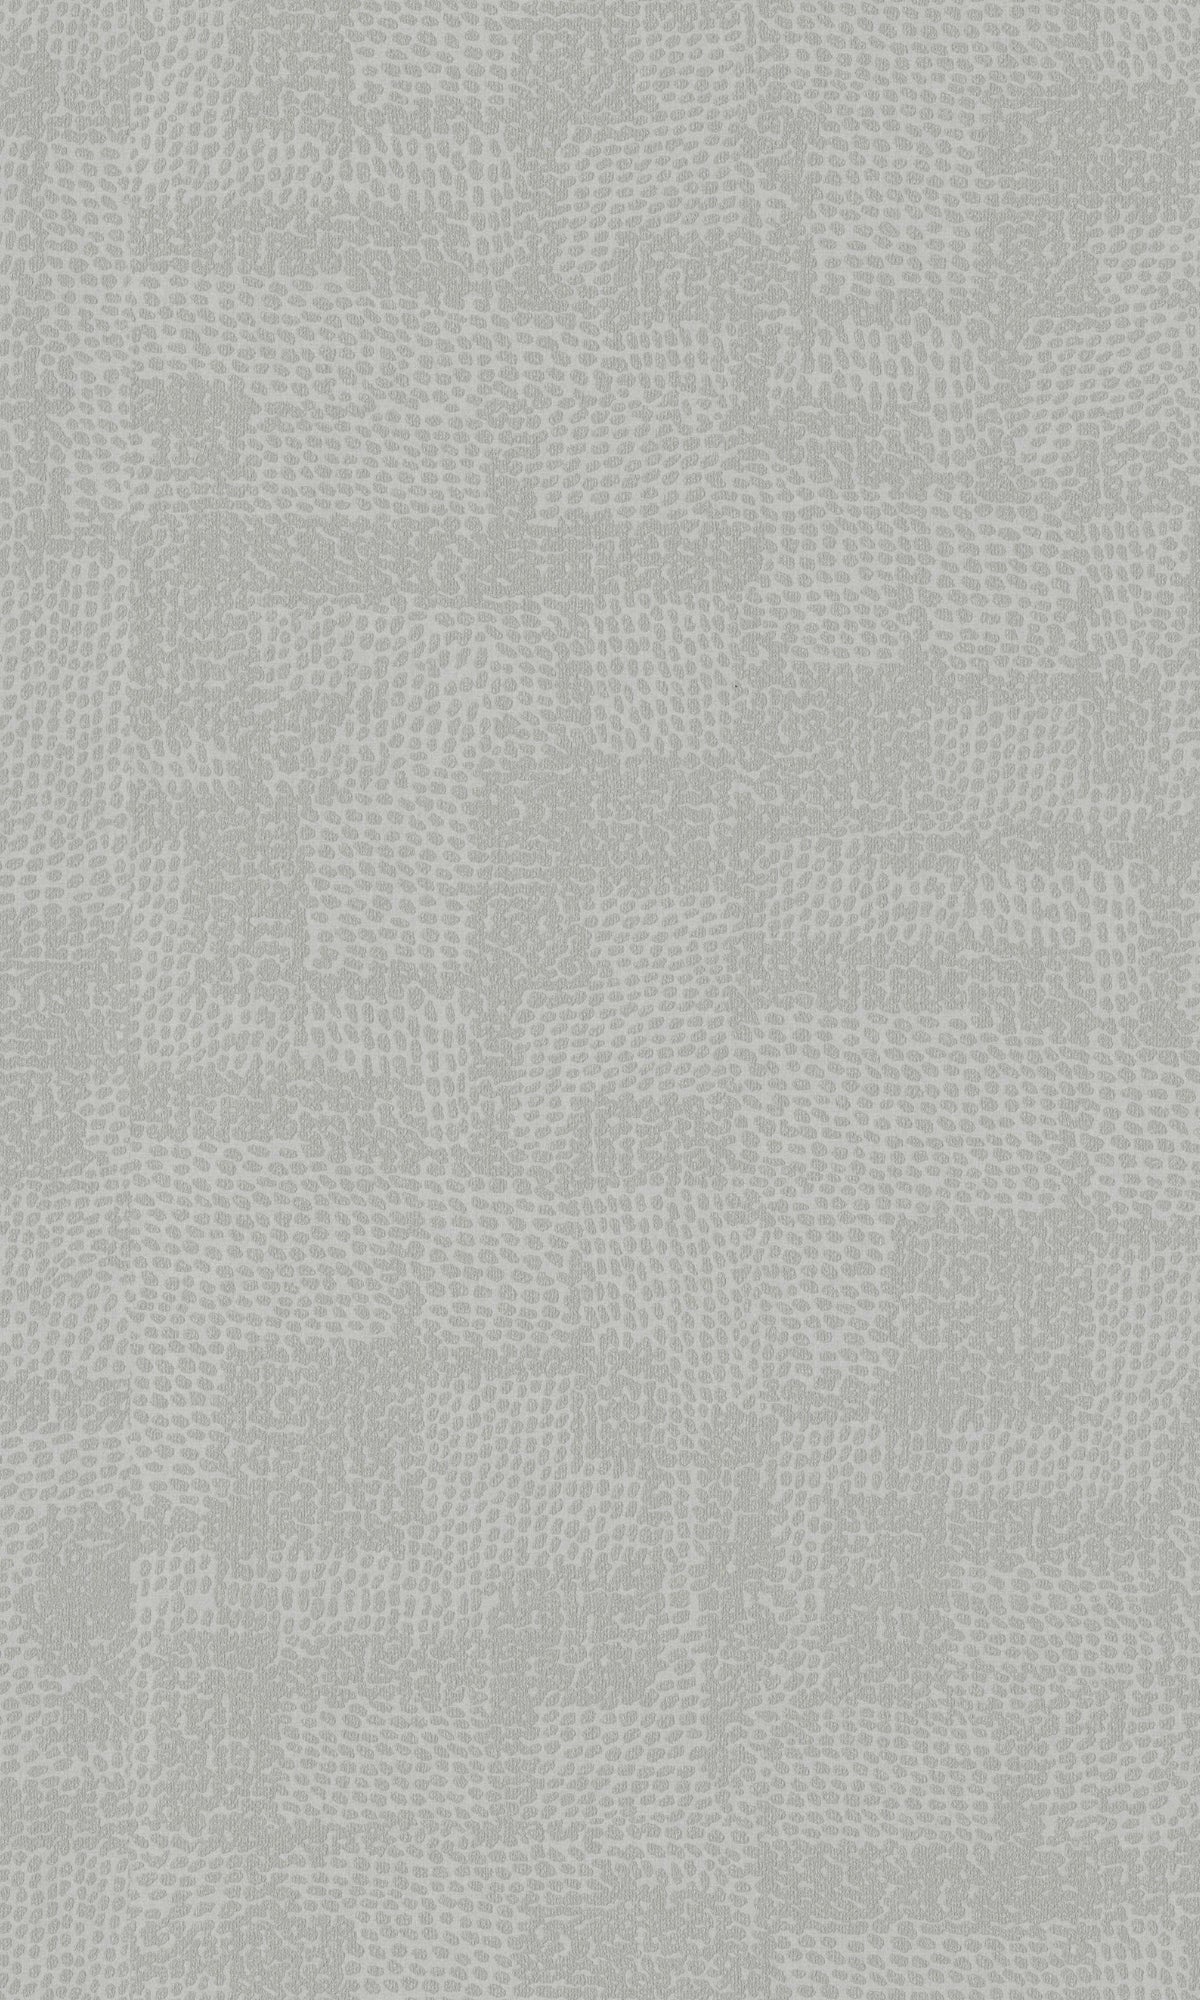 Greige Minimalist Textured Geometric Circles Wallpaper R8683